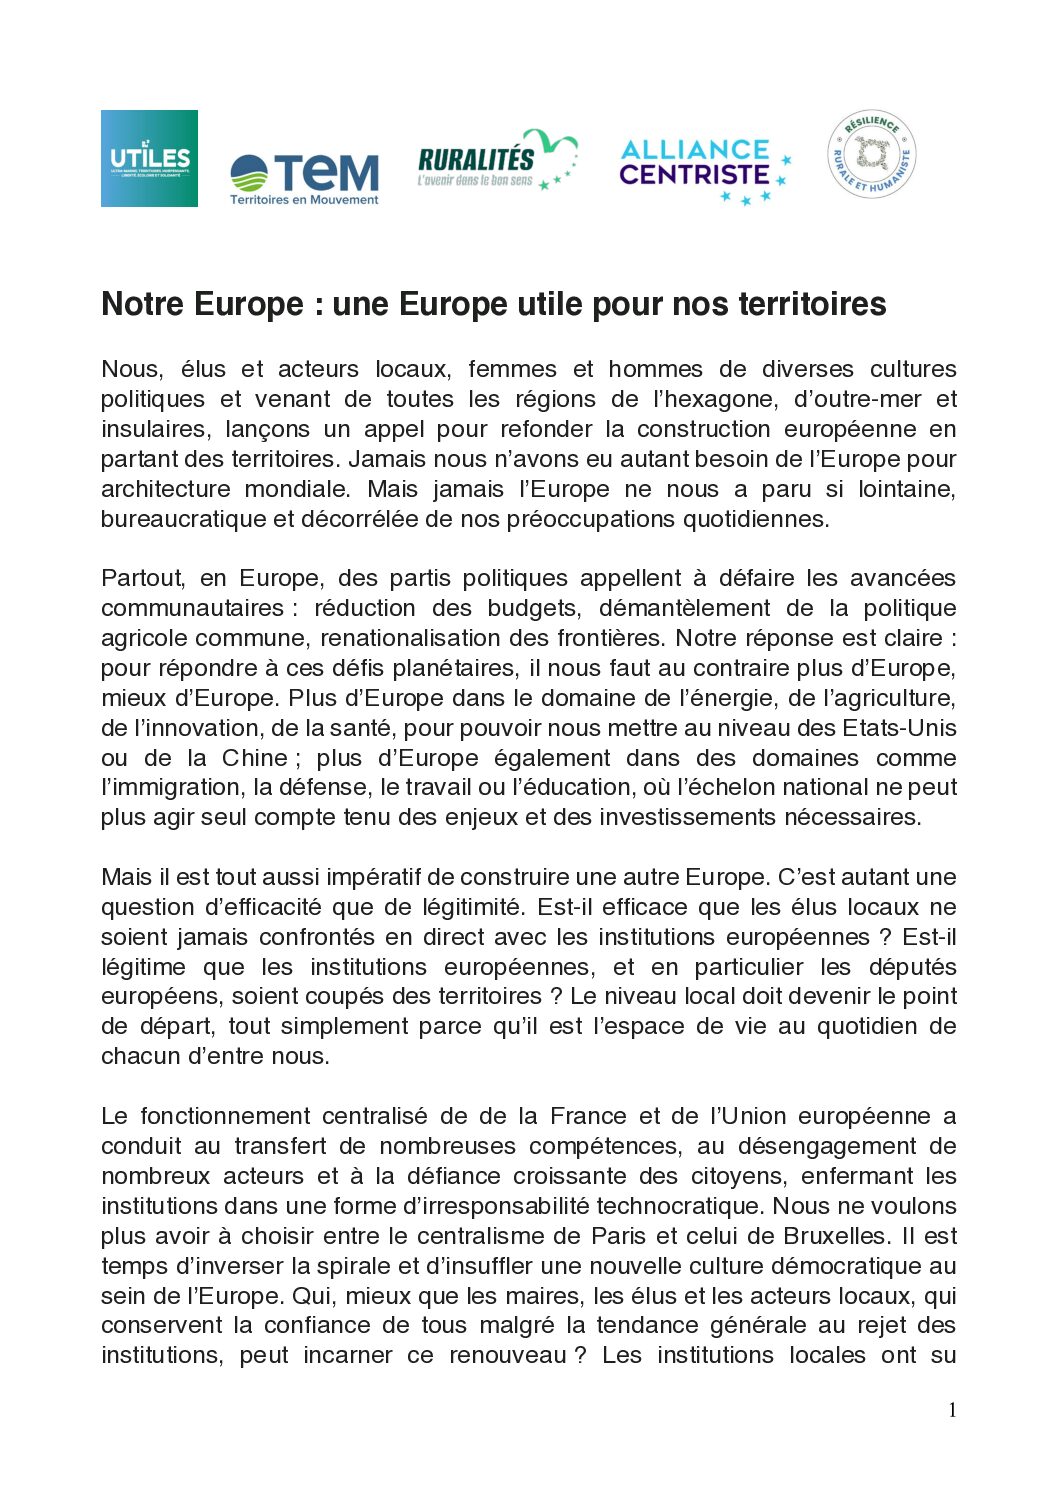 Manifeste_Notre_Europe_une_Europe_utile_pour_nos_territoires